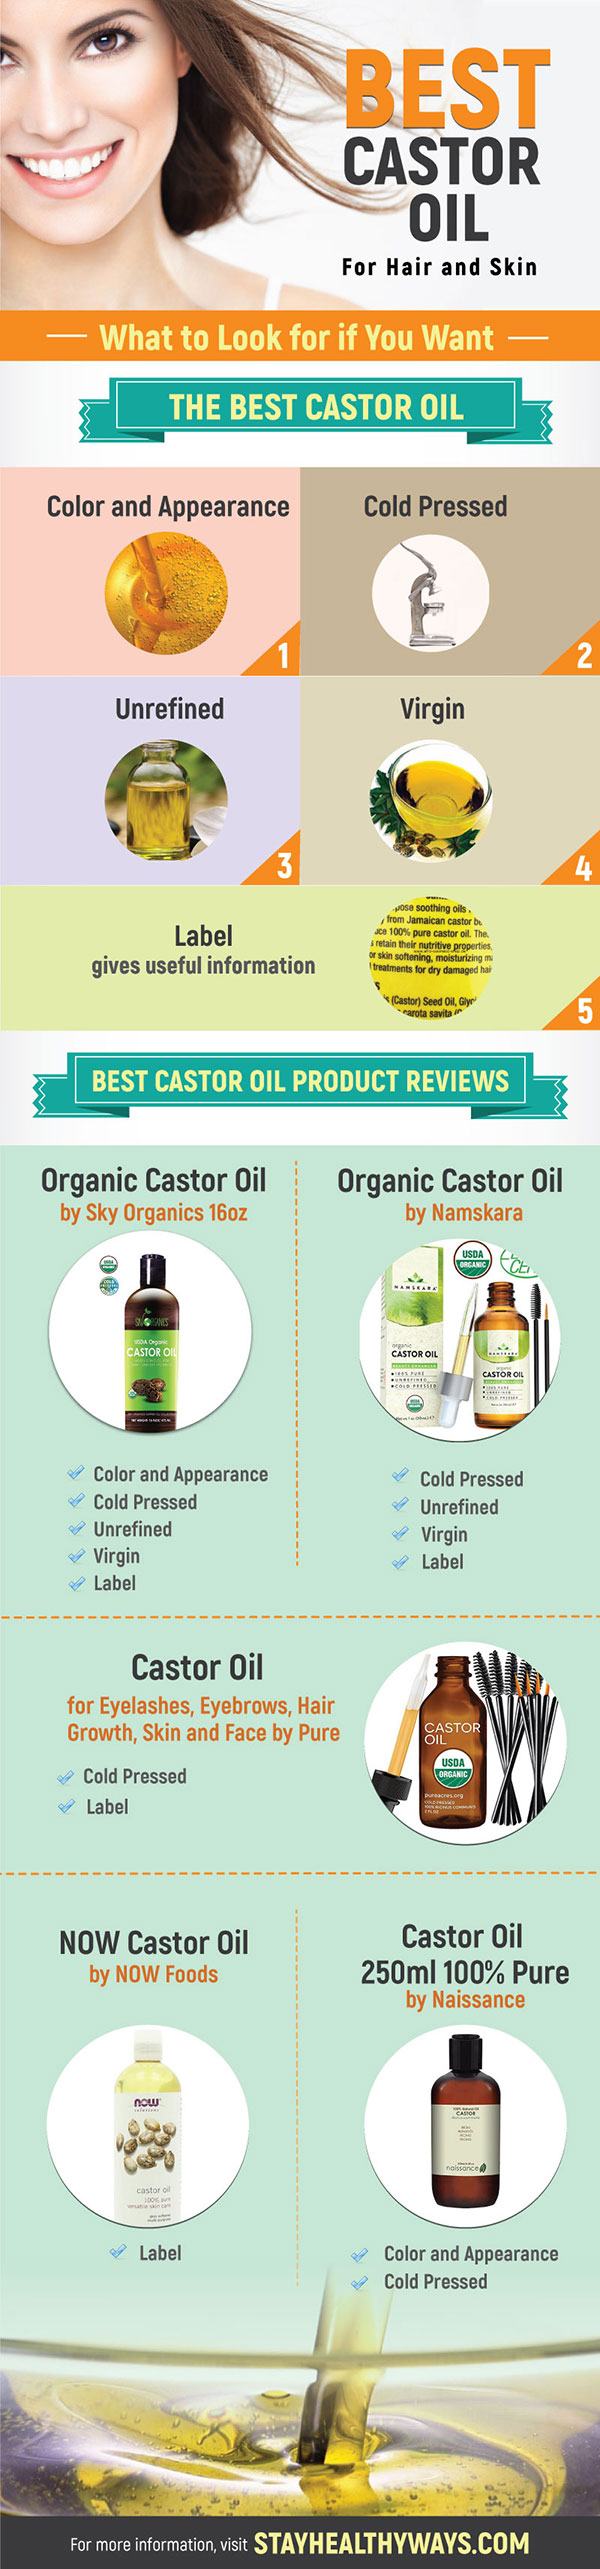 best castor oil infographic